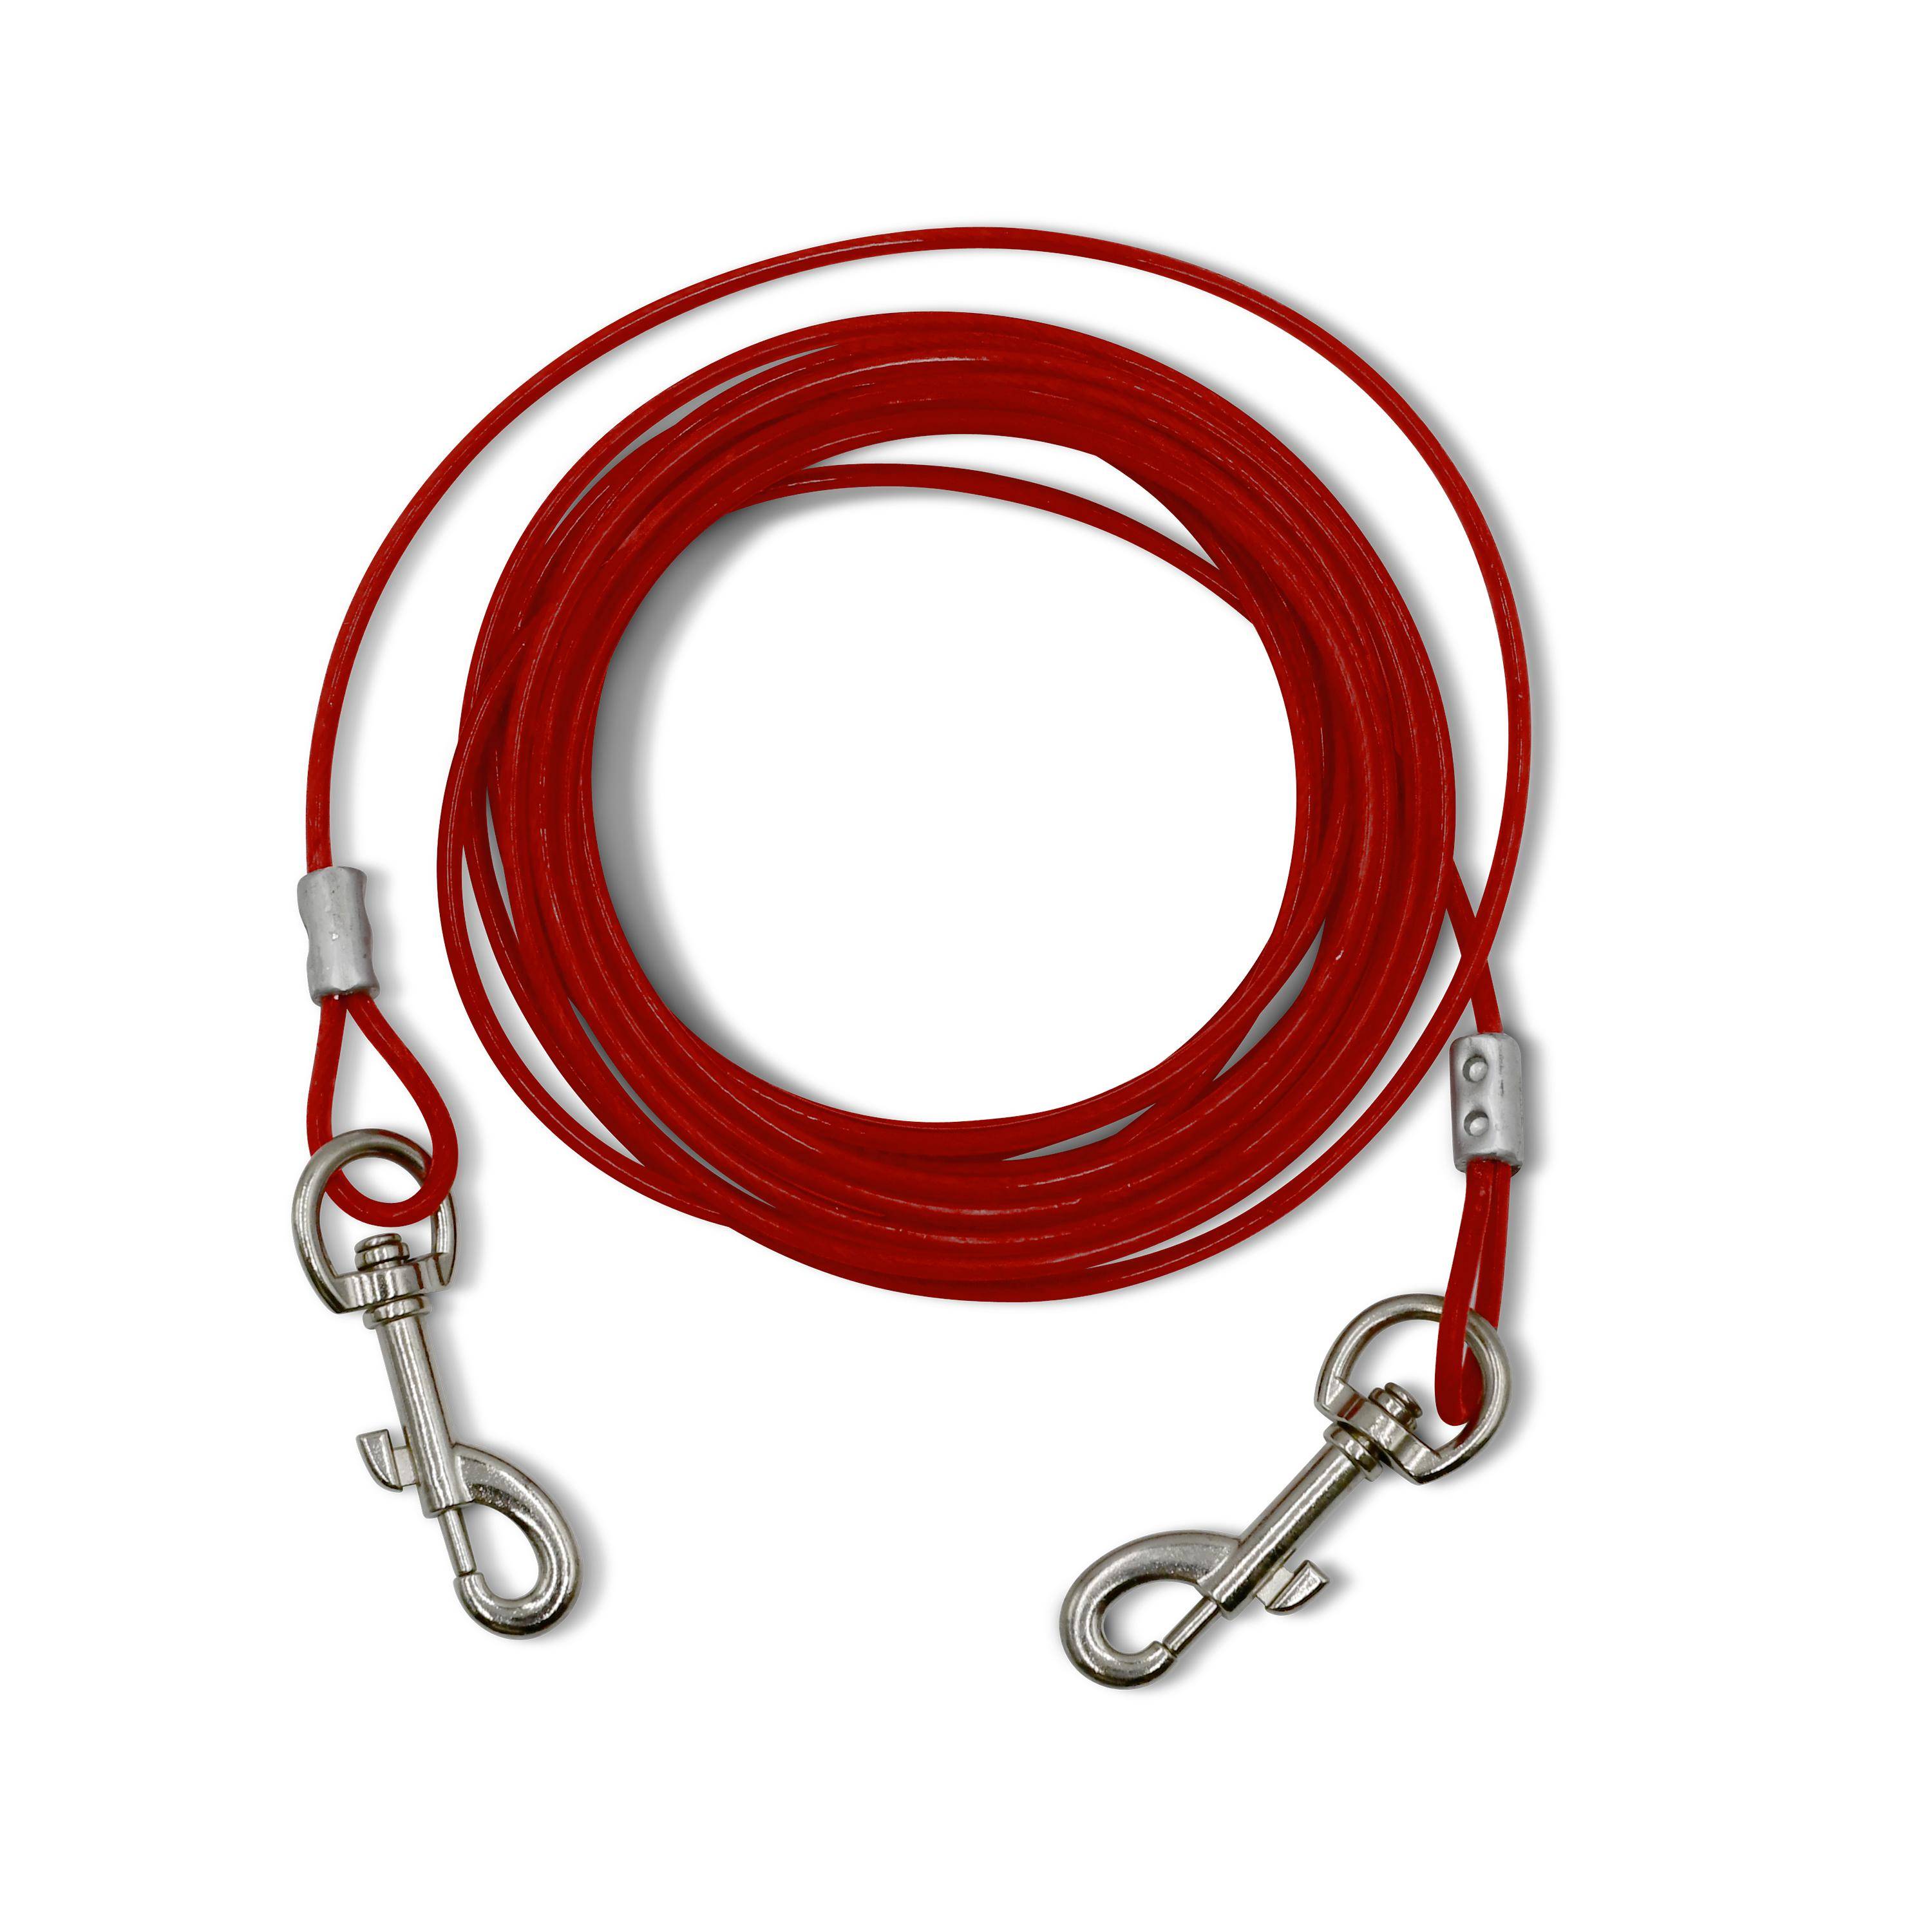 Piquet d’attache en fer de 40 cm et câble gainé de 4.5 m, épaisseur 5 mm, rouge Photo2